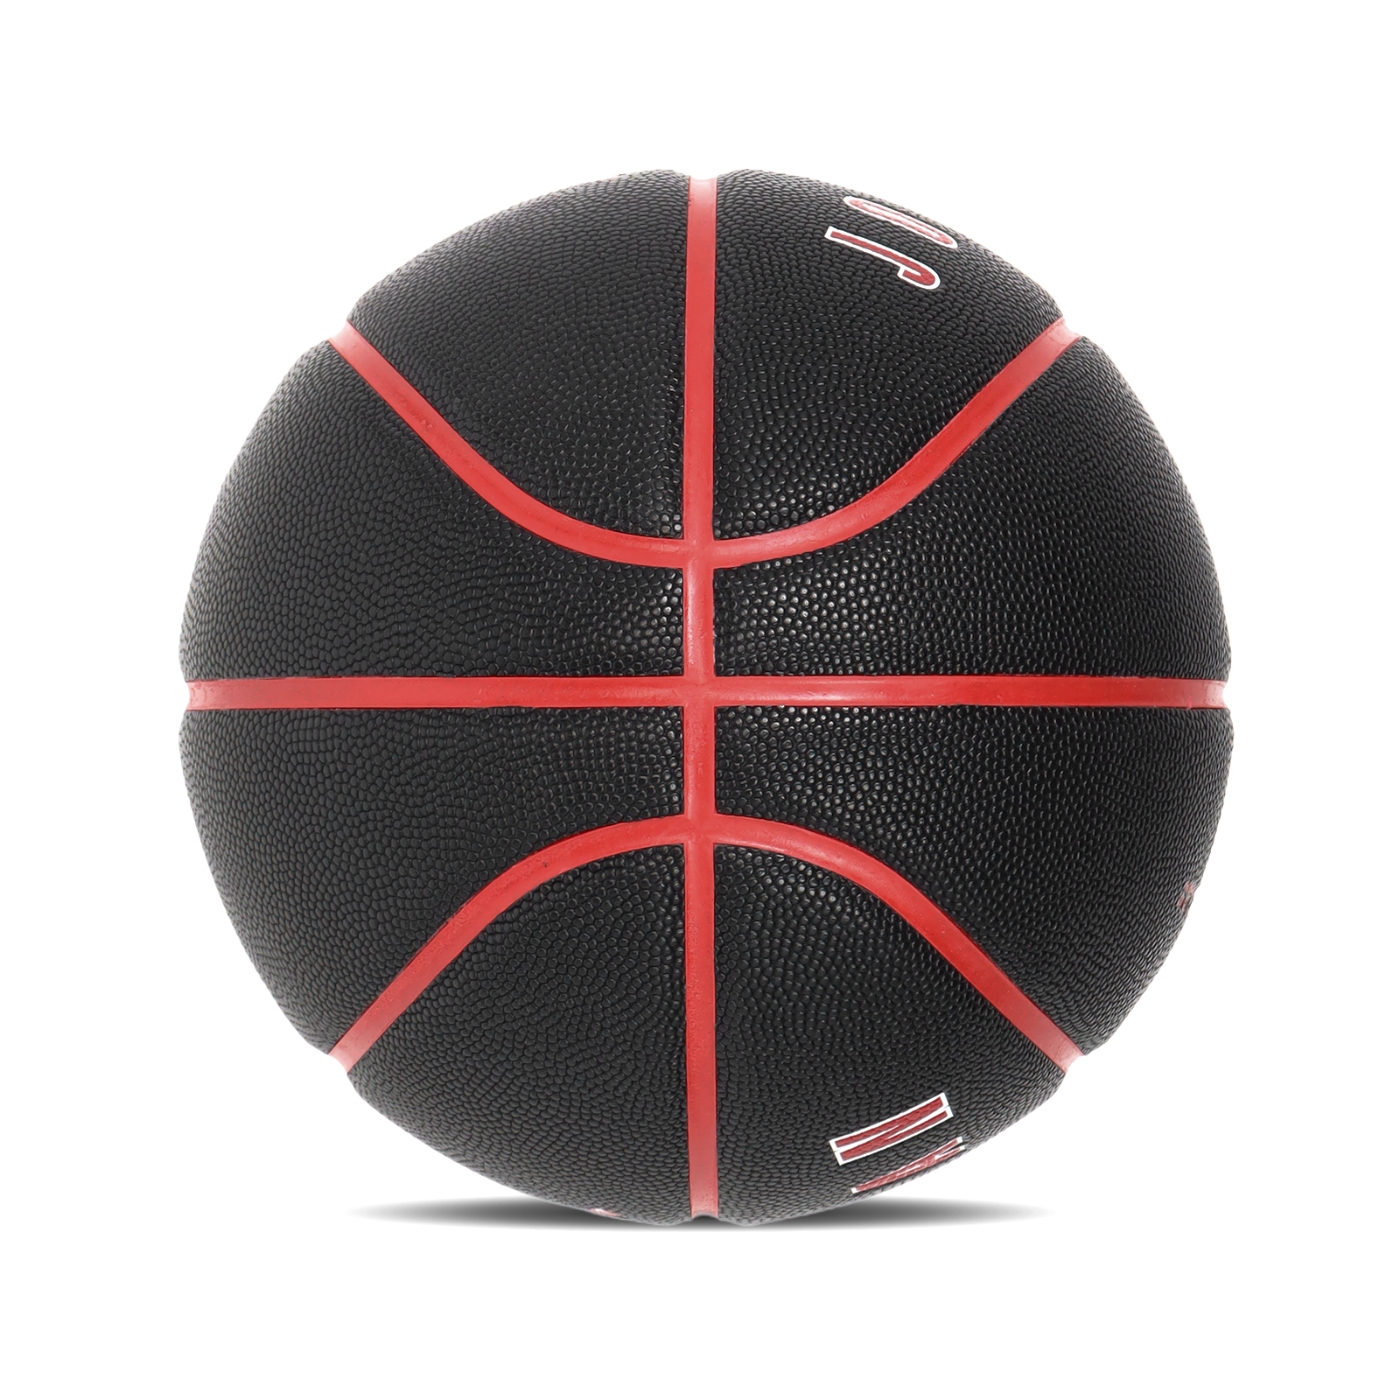 Nike 籃球Jordan Ultimate 2 8P 標準7號球黑紅室外球J100825401-707 